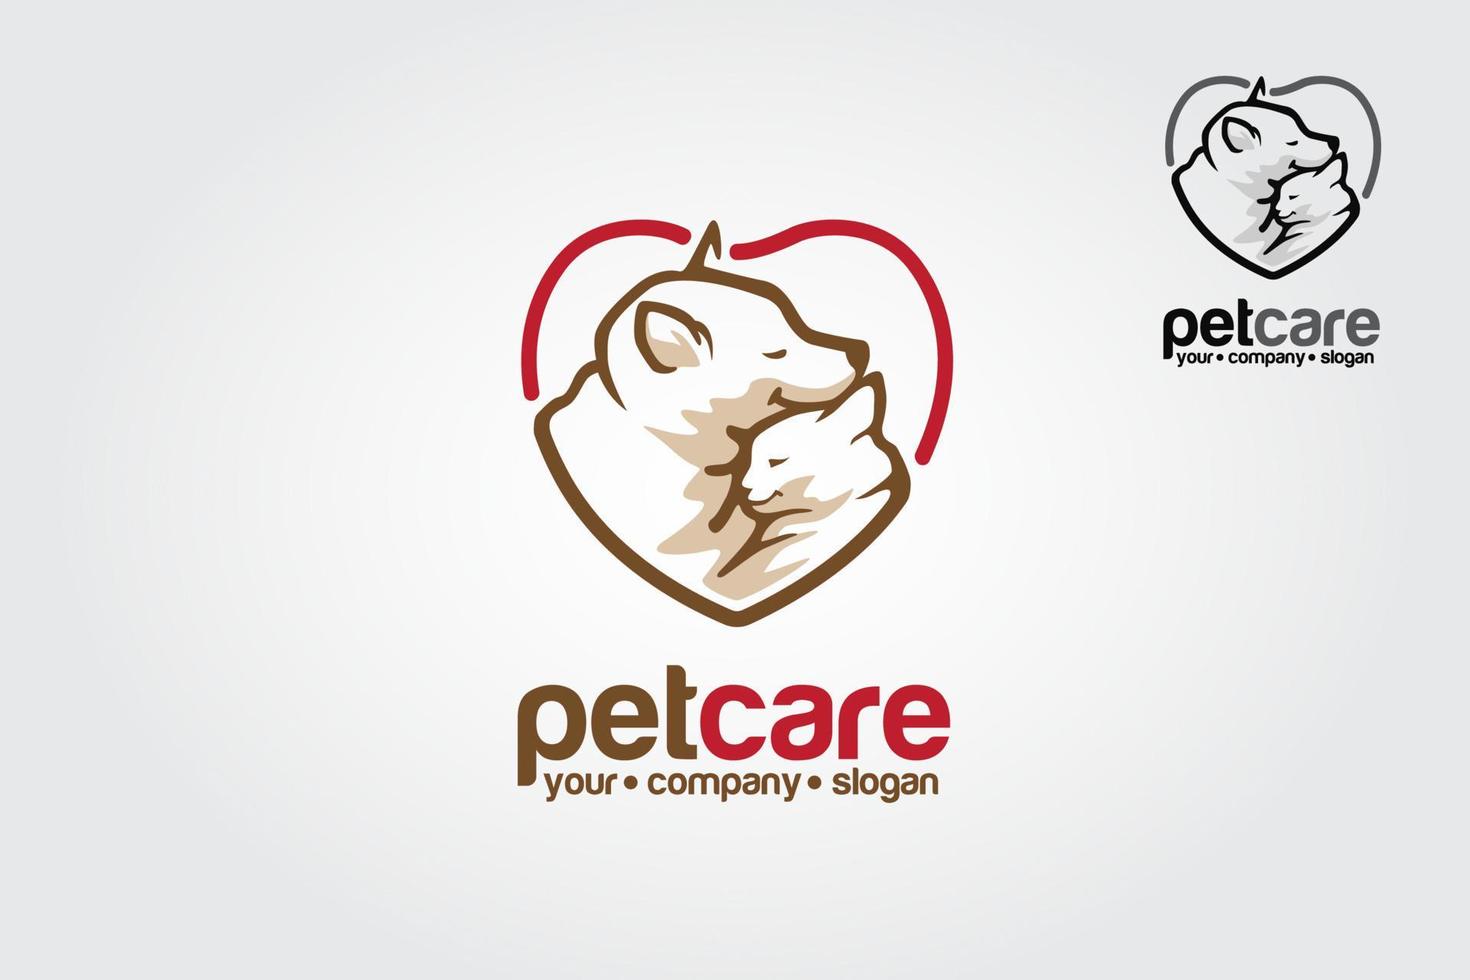 modèle de logo vectoriel de soins pour animaux de compagnie. cette conception de logo convient aux entreprises, aux animaux, aux animaux de compagnie, aux soins pour animaux de compagnie, aux chiens et aux chats, aux vétérinaires, aux centres pour animaux, etc.